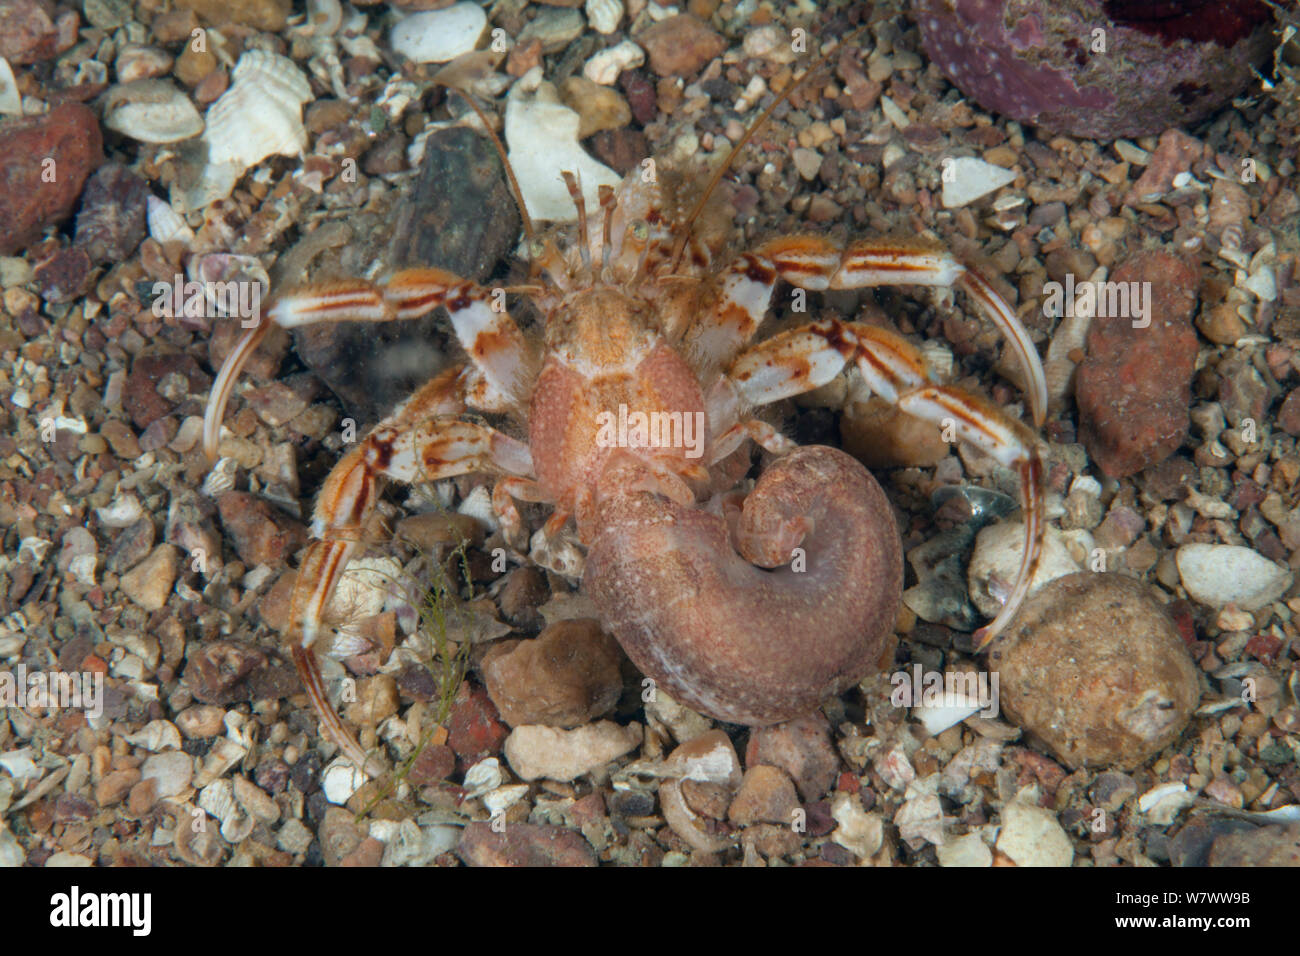 Gemeinsame Einsiedlerkrebs (Pagurus bernhardus) Bouley Bay, Jersey, Britische Kanalinseln. Stockfoto